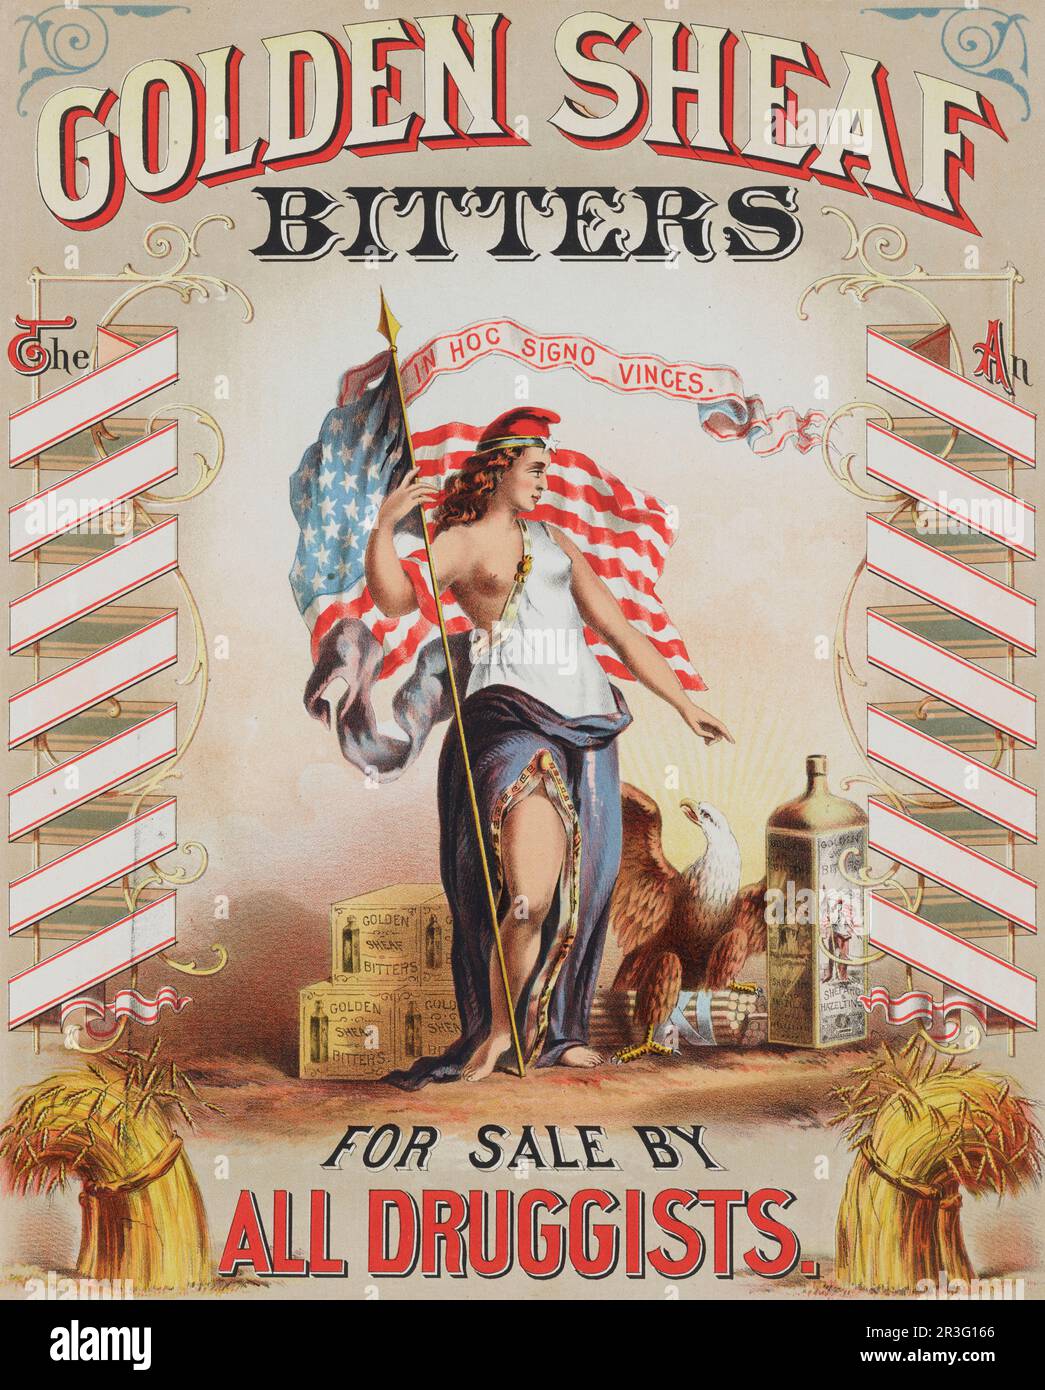 Publicité vintage pour Golden Sheaf Buters mettant en vedette la déesse Columbia avec un drapeau américain. Banque D'Images